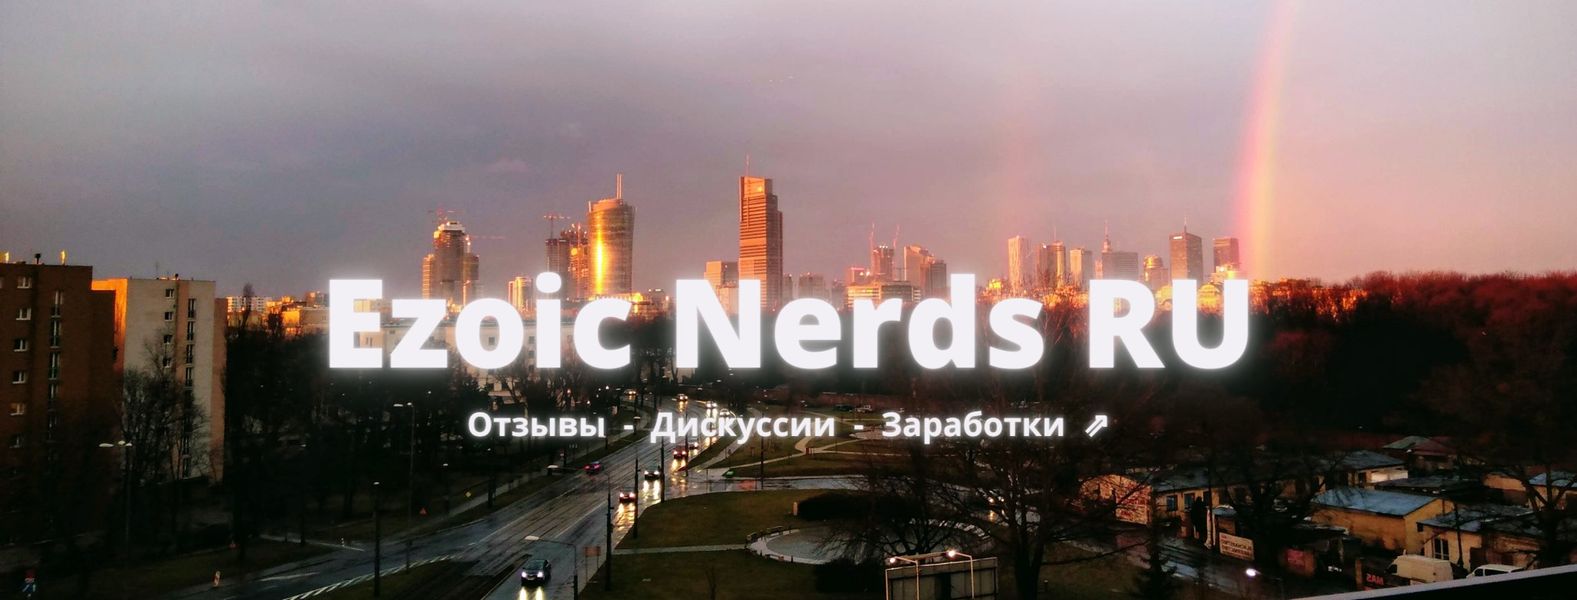 Ezoic Nerds - дискуссионная группа в Facebook